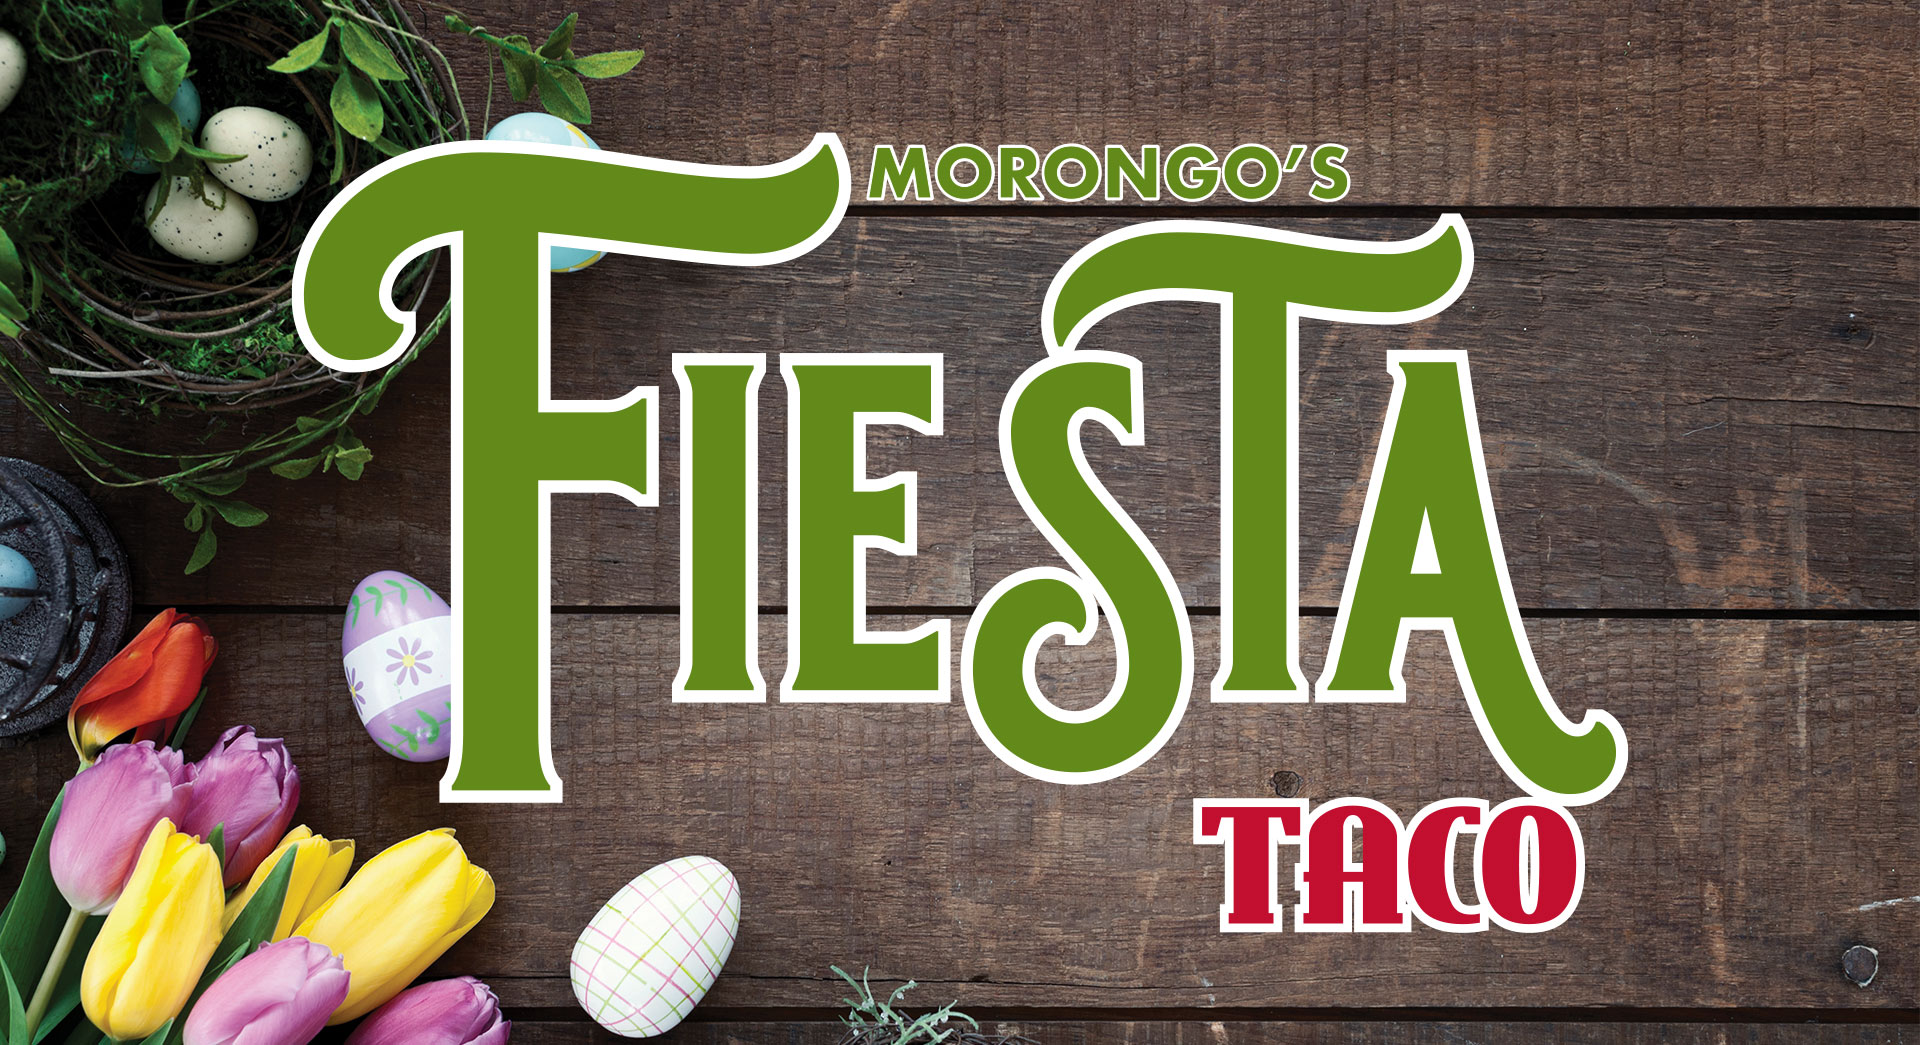 Fiesta Taco at Morongo